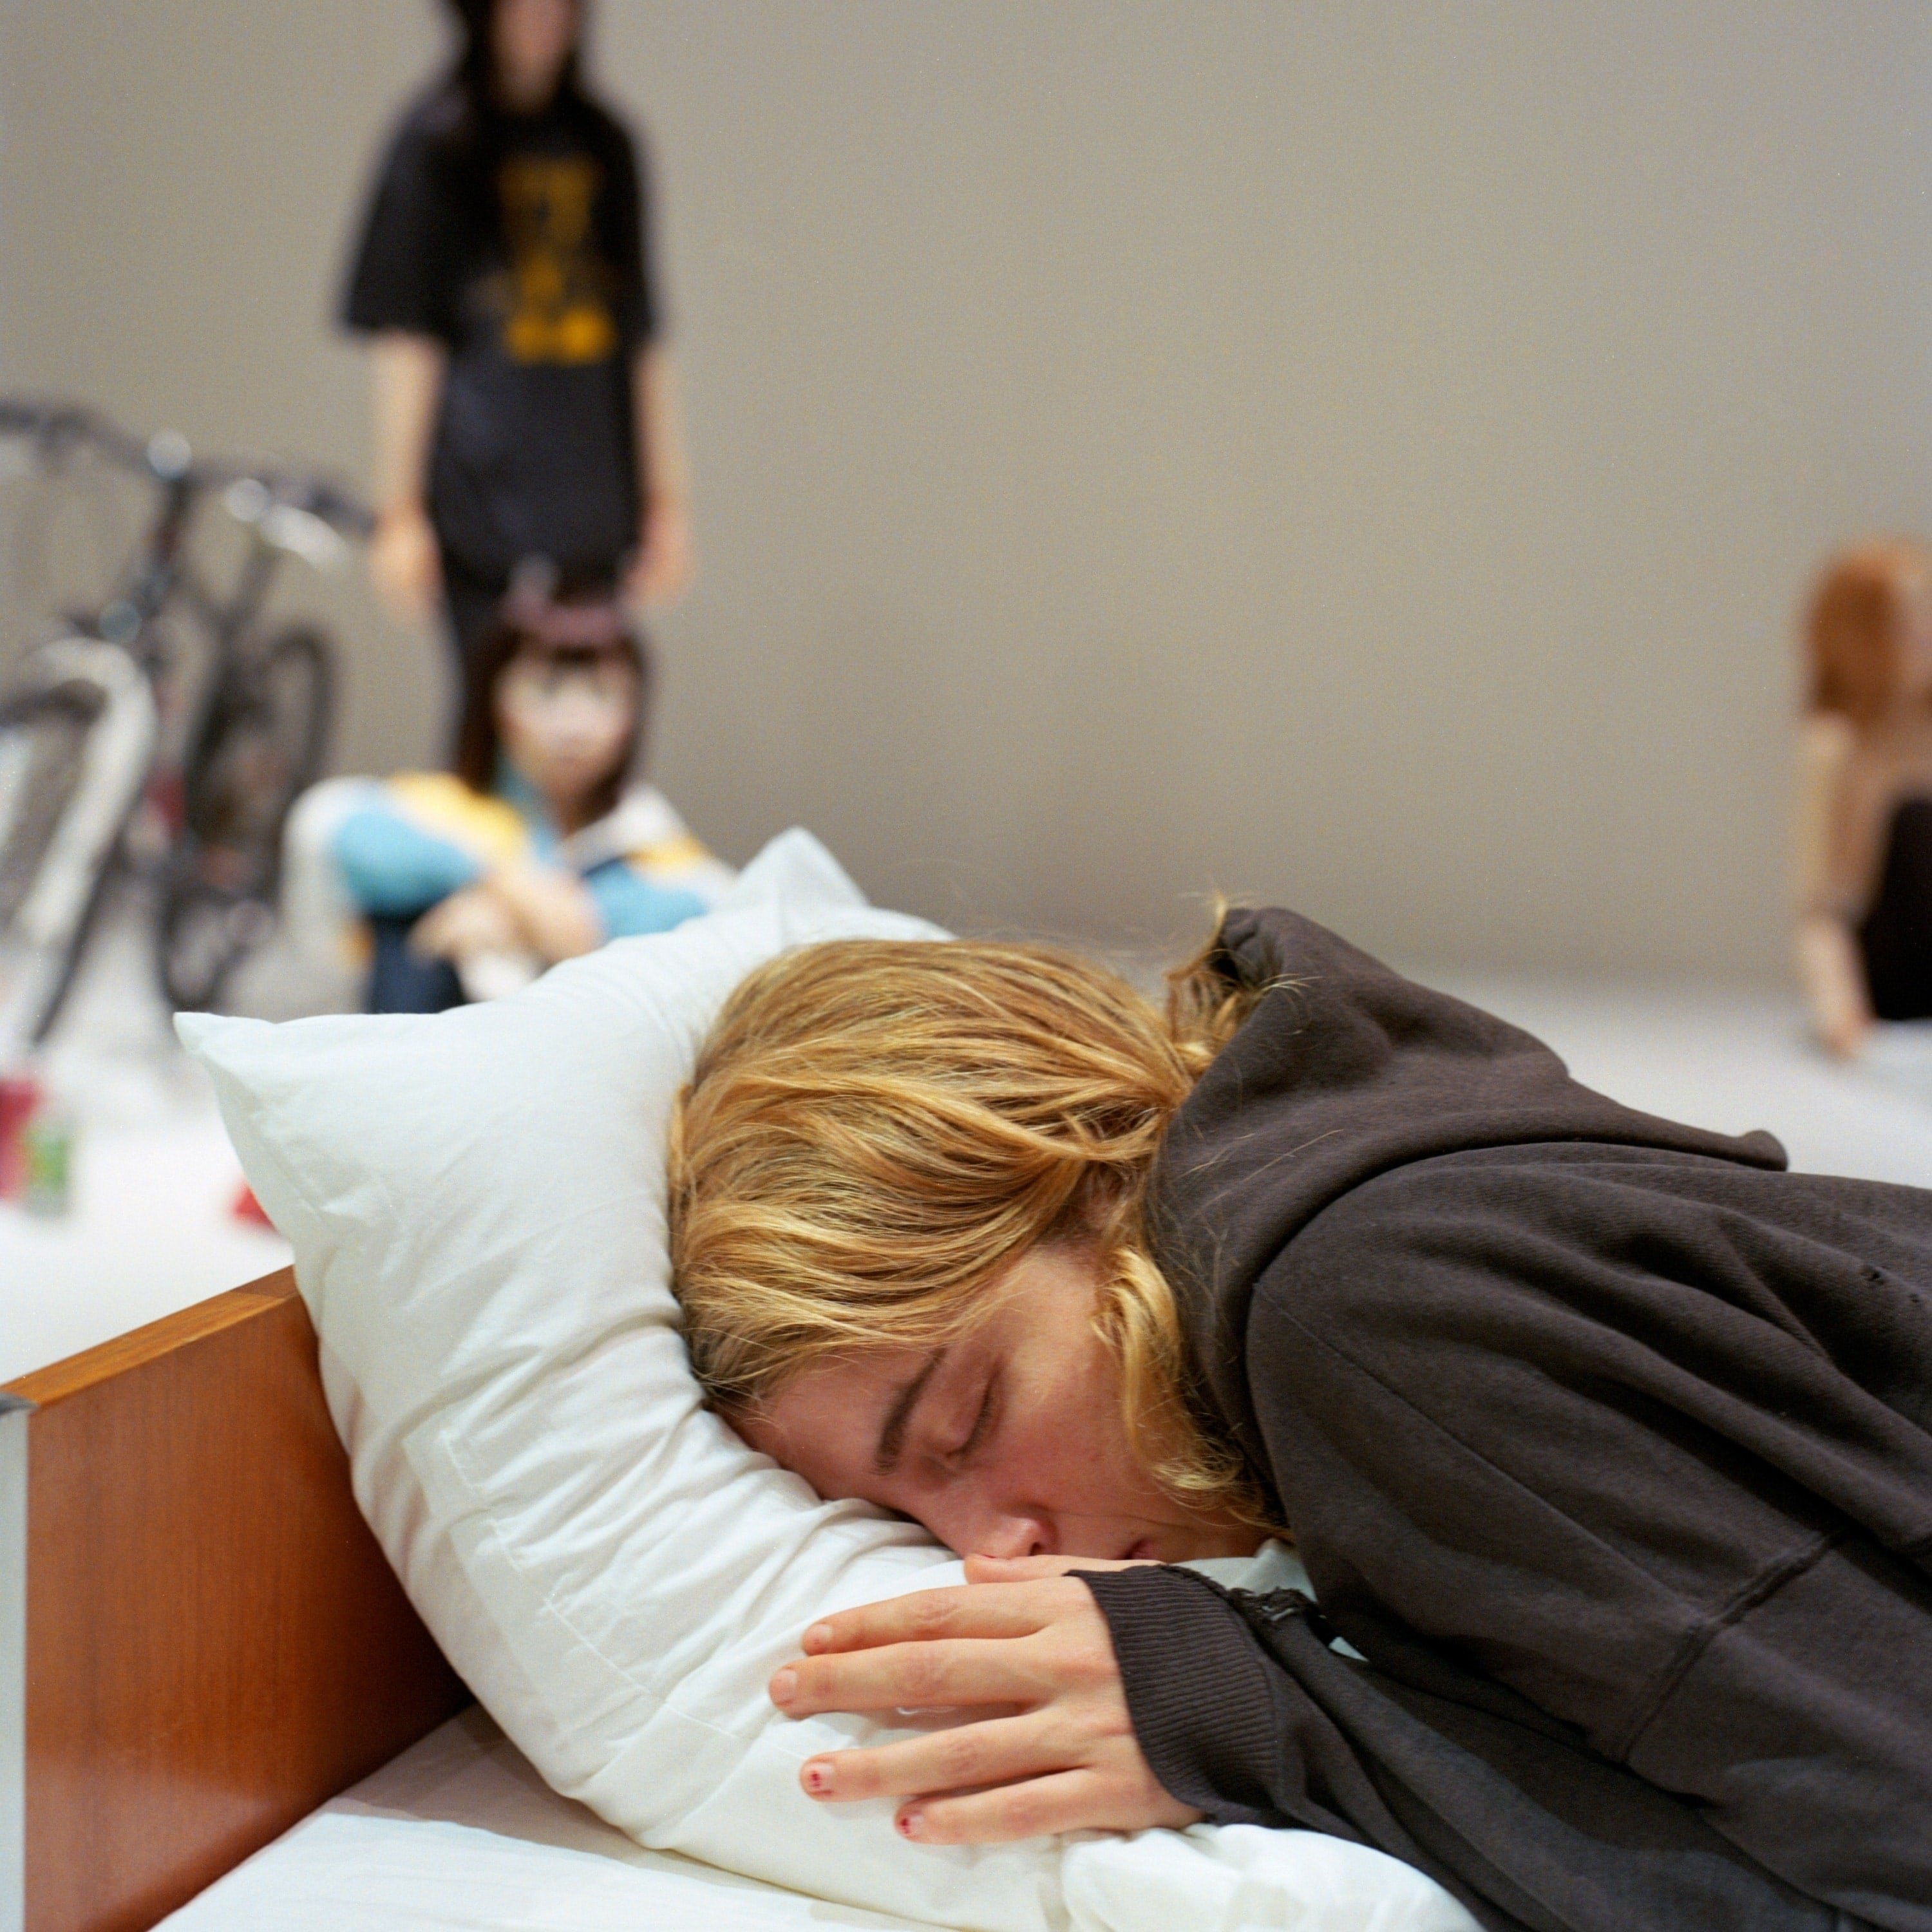 Gisèle Vienne作品《L’Étang》中躺在枕头上的年轻女子